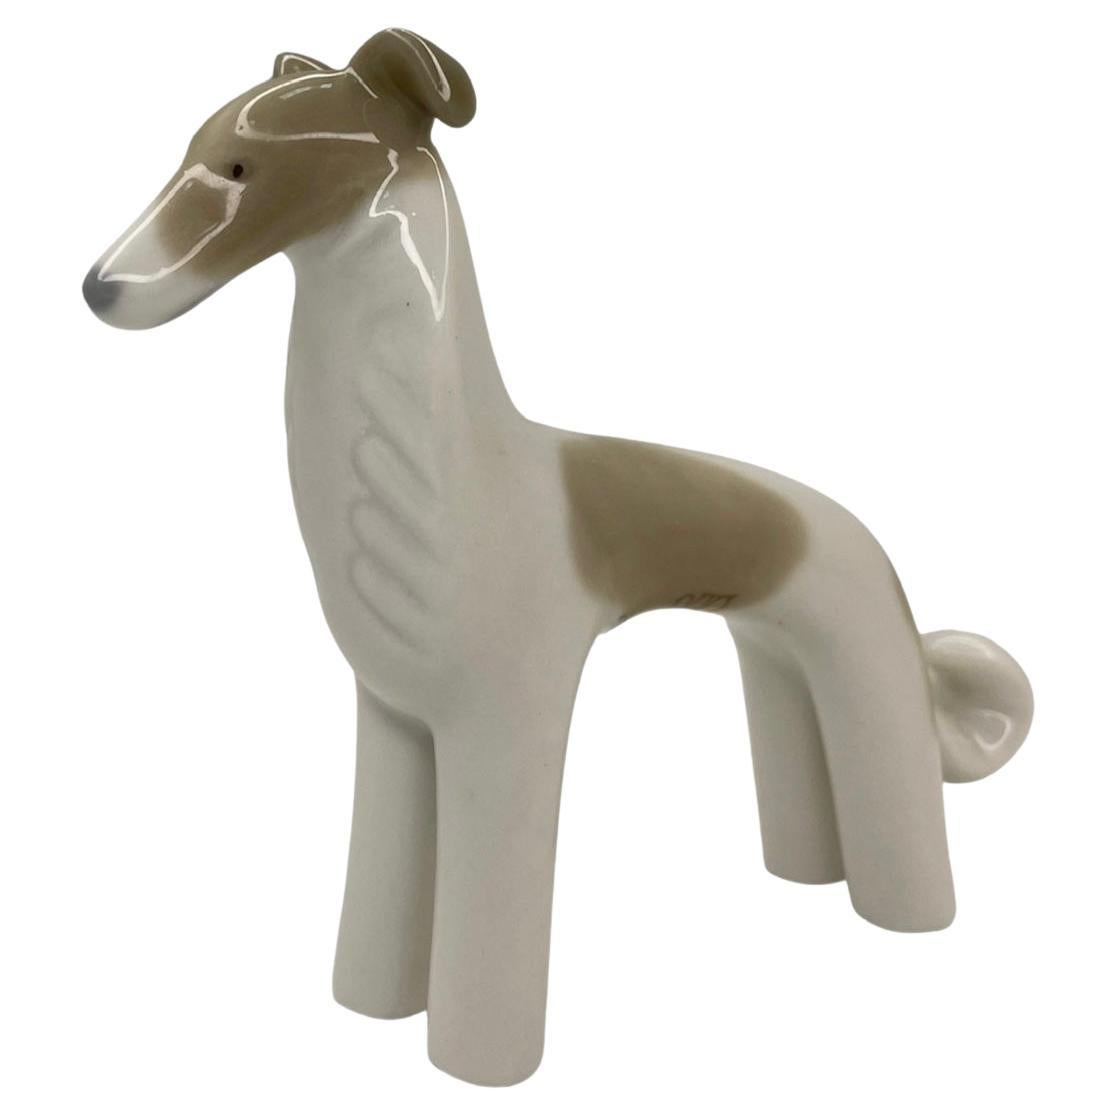 Mini-figurine d'un chien en porcelaine de Lladro